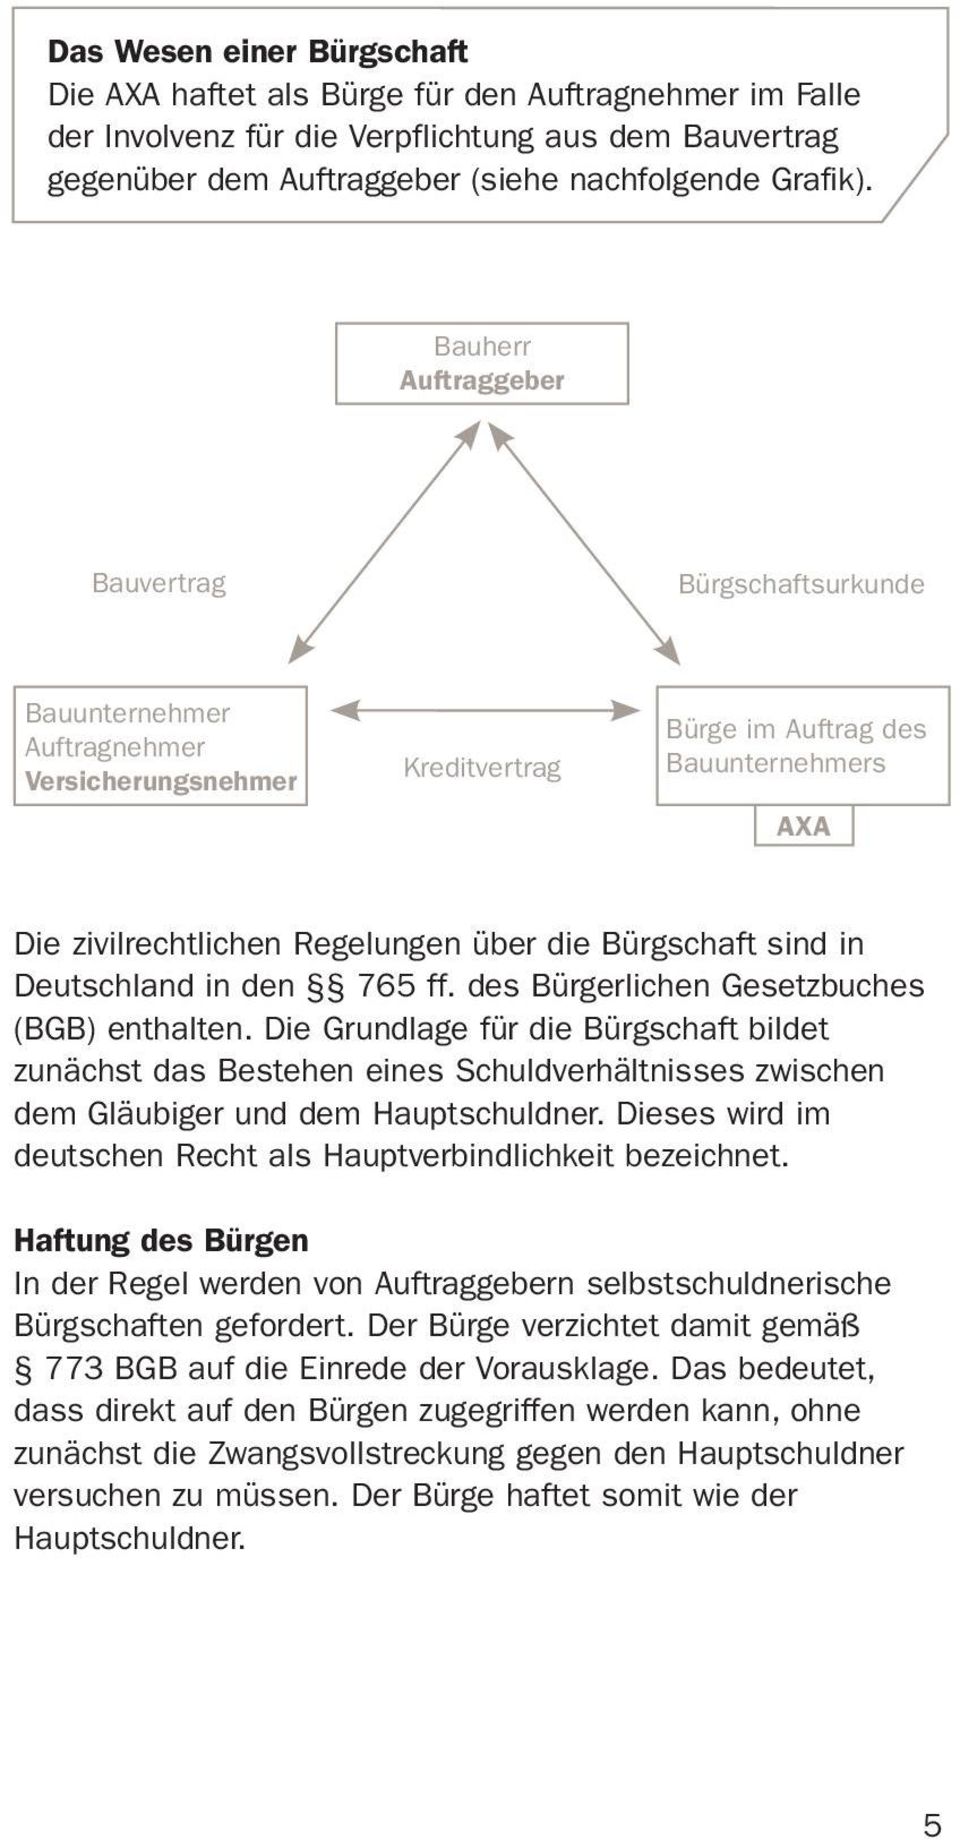 Bürgschaft sind in Deutschland in den 765 ff. des Bürgerlichen Gesetzbuches (BGB) enthalten.